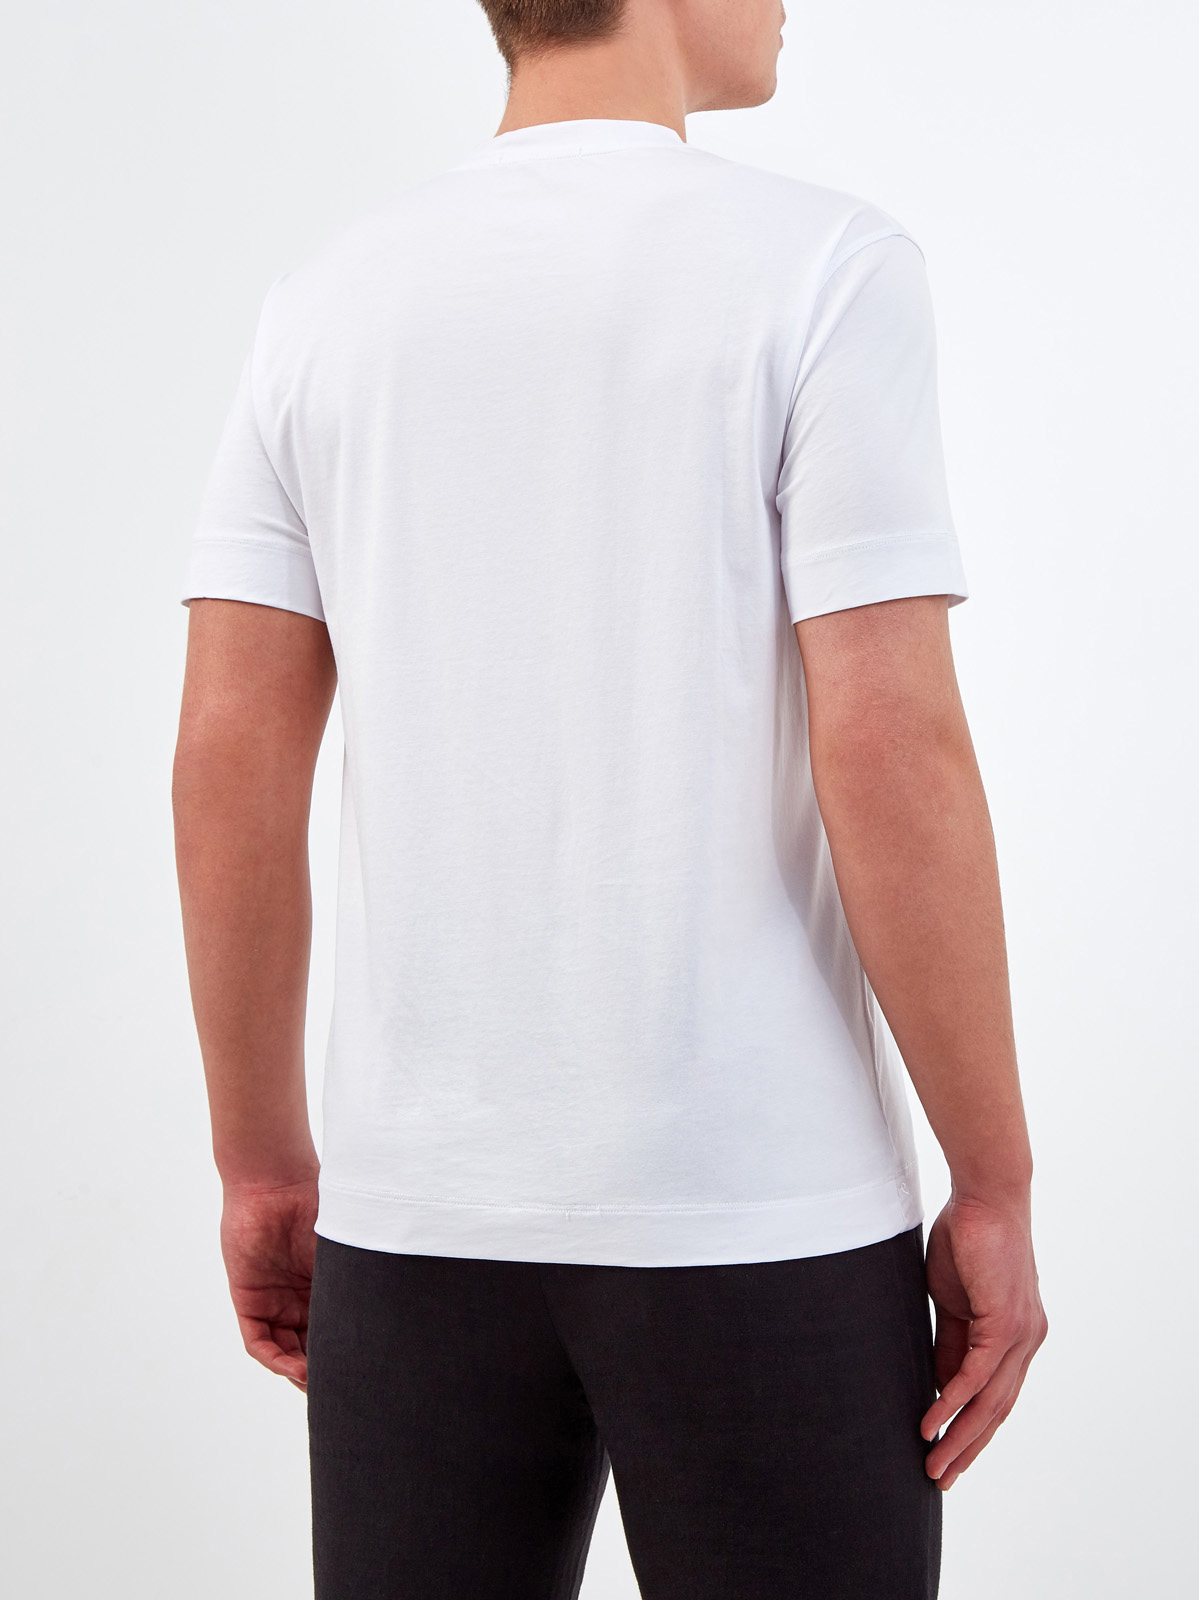 Классическая белая футболка из гладкого джерси CUDGI, цвет белый, размер XL;2XL;3XL;M - фото 4